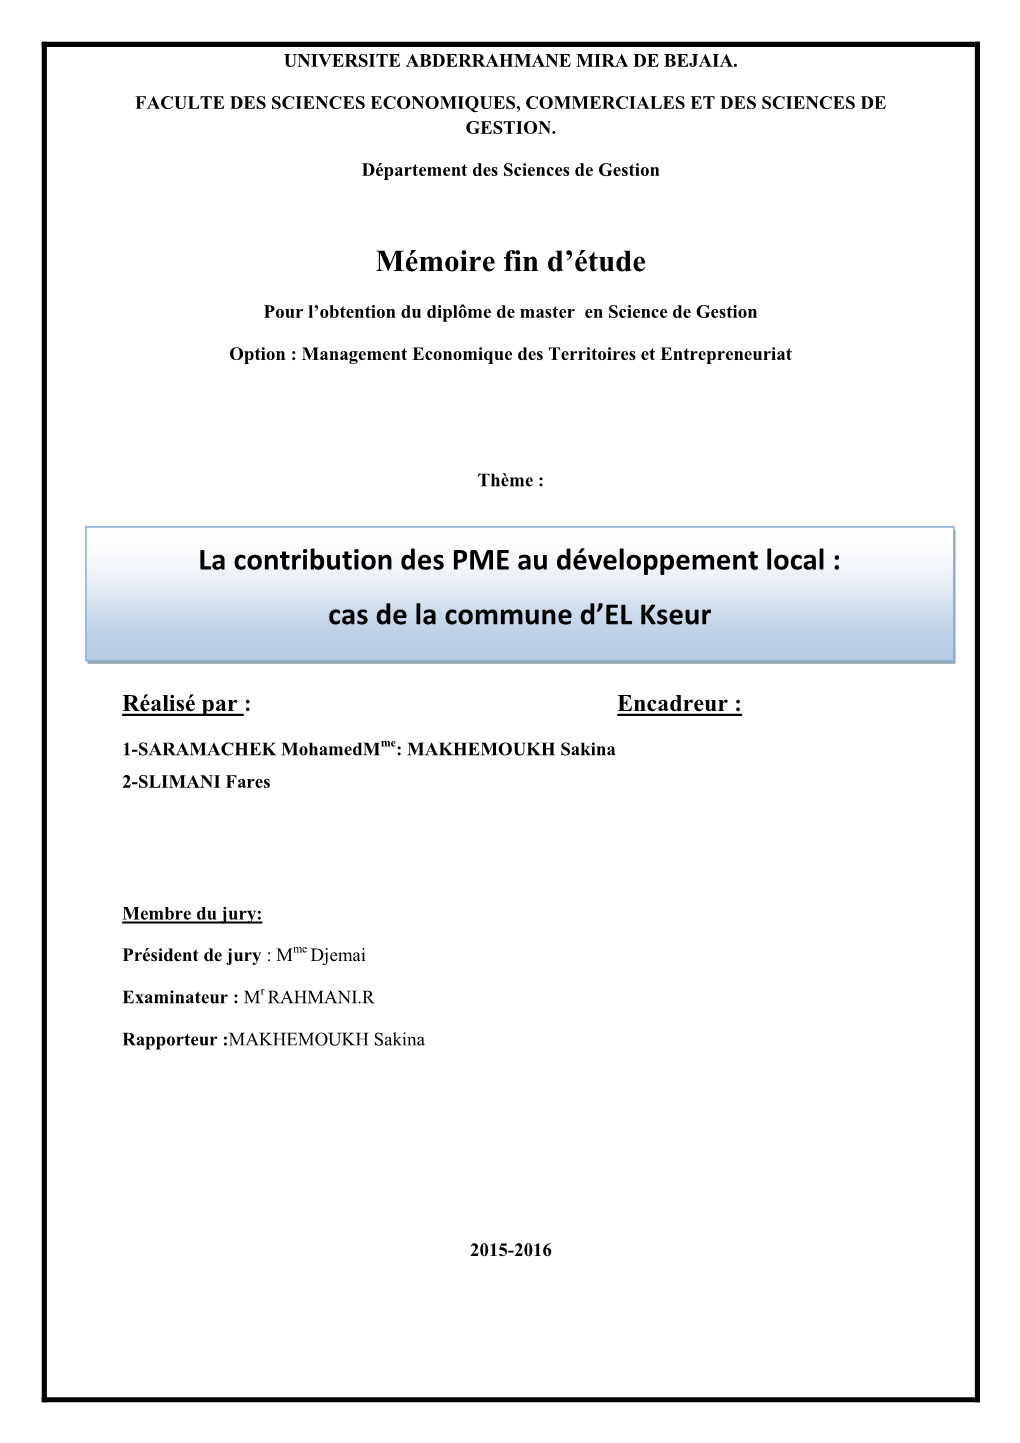 Mémoire Fin D'étude La Contribution Des PME Au Développement Local